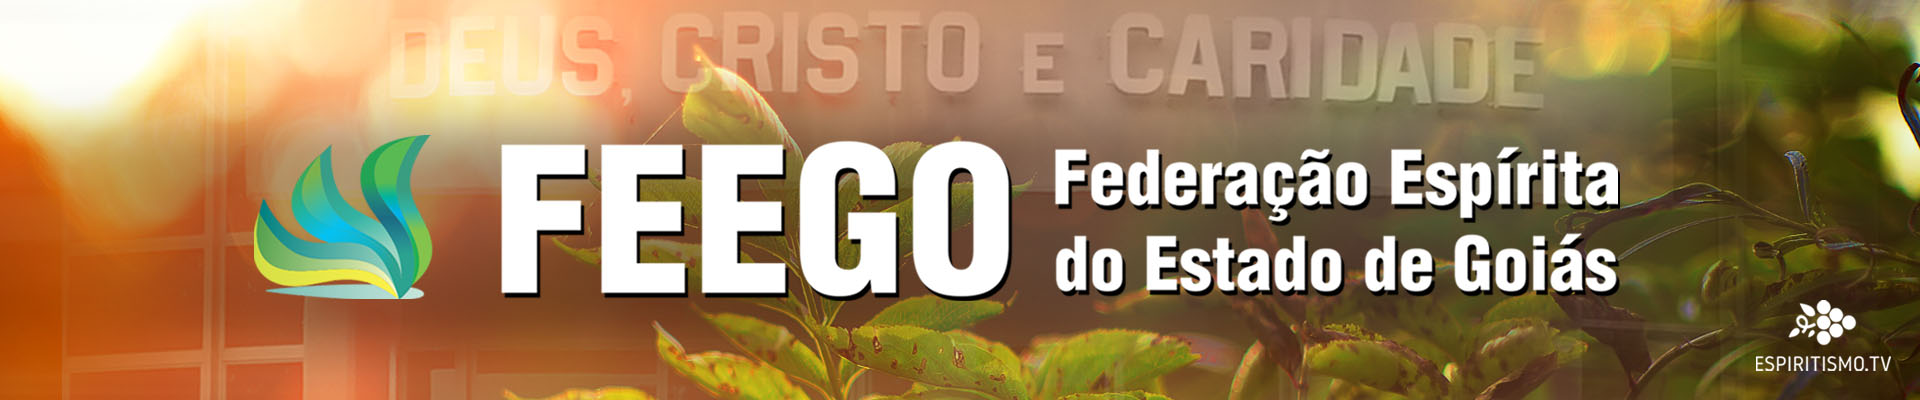 FEEGO - Federação Espírita do Estado de Goiás 1